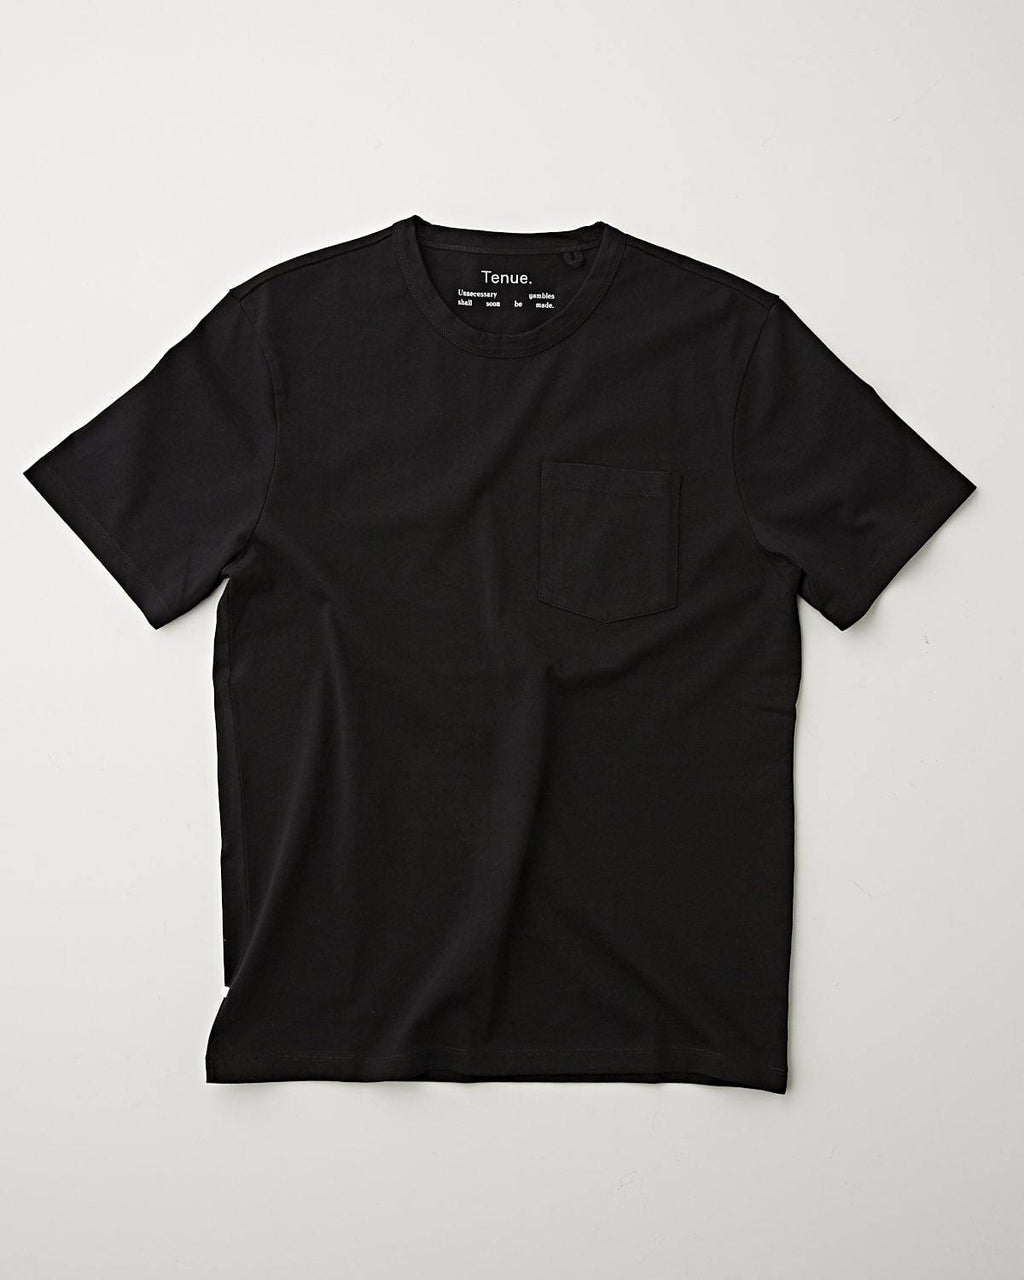 Tenue. John Pocket Tee Black T-shirt S/S Men